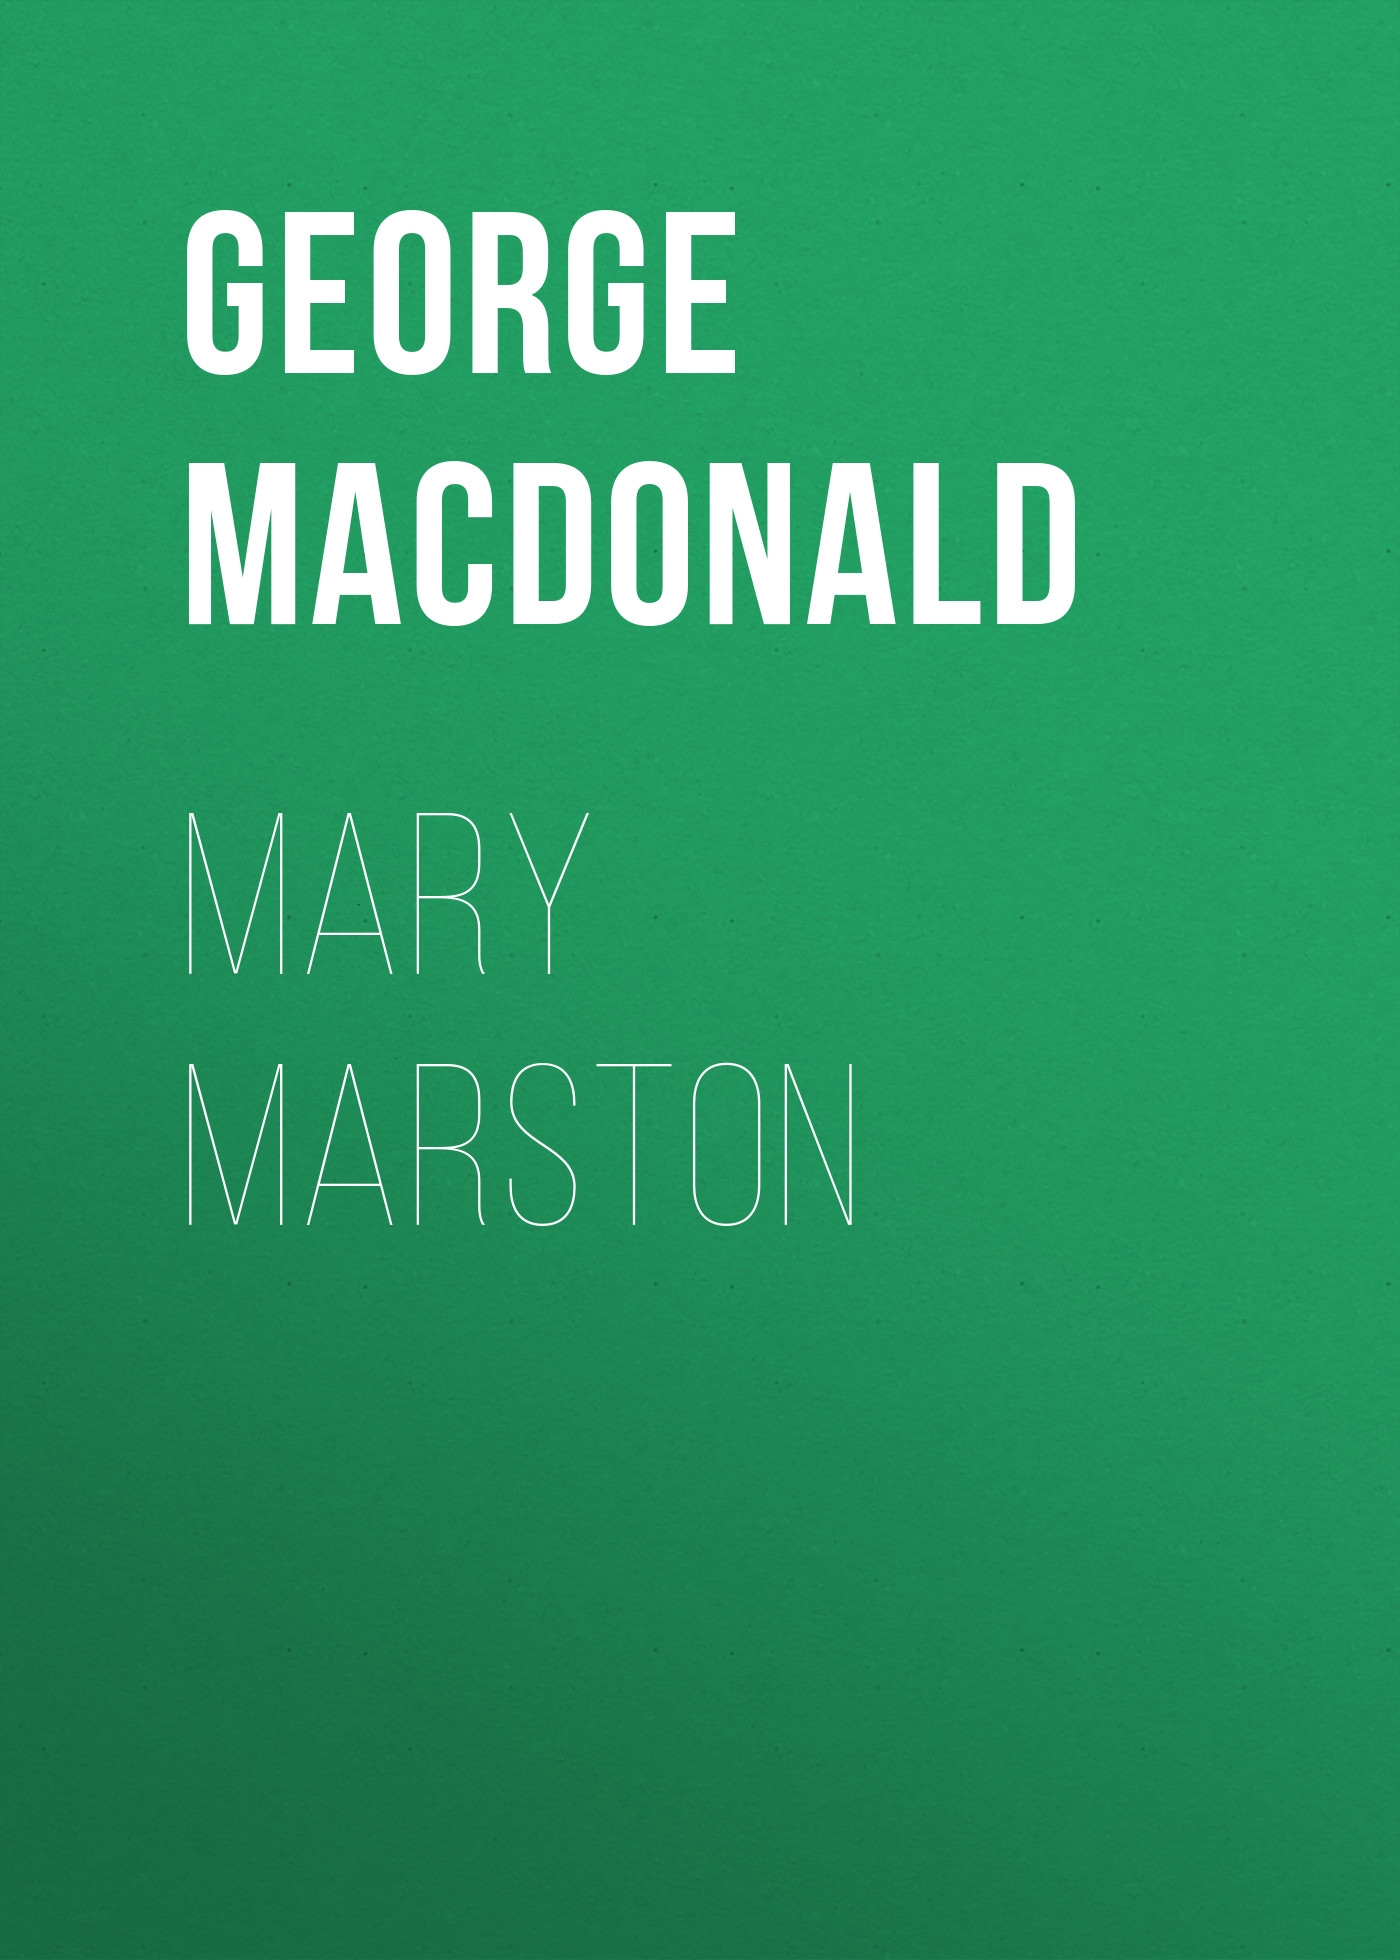 Книга Mary Marston из серии , созданная George MacDonald, может относится к жанру Зарубежная классика, Зарубежная эзотерическая и религиозная литература, Зарубежная старинная литература. Стоимость электронной книги Mary Marston с идентификатором 35007809 составляет 0 руб.